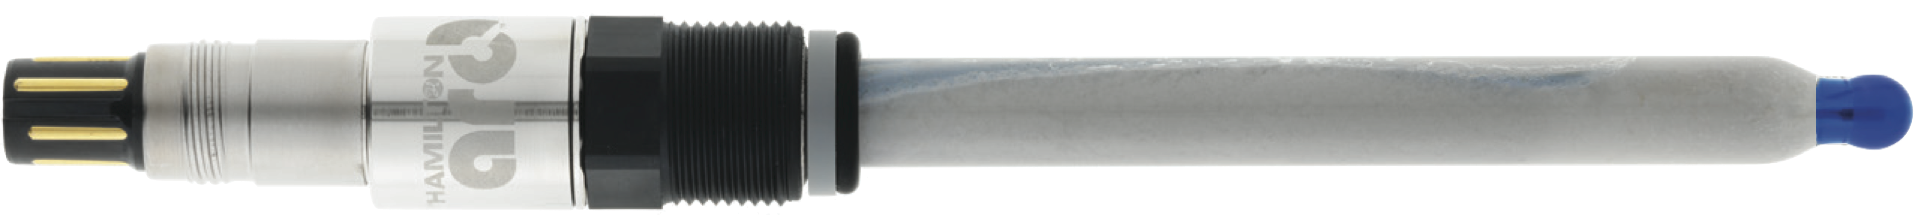 ポリライトプラスアーク pH測定センサー